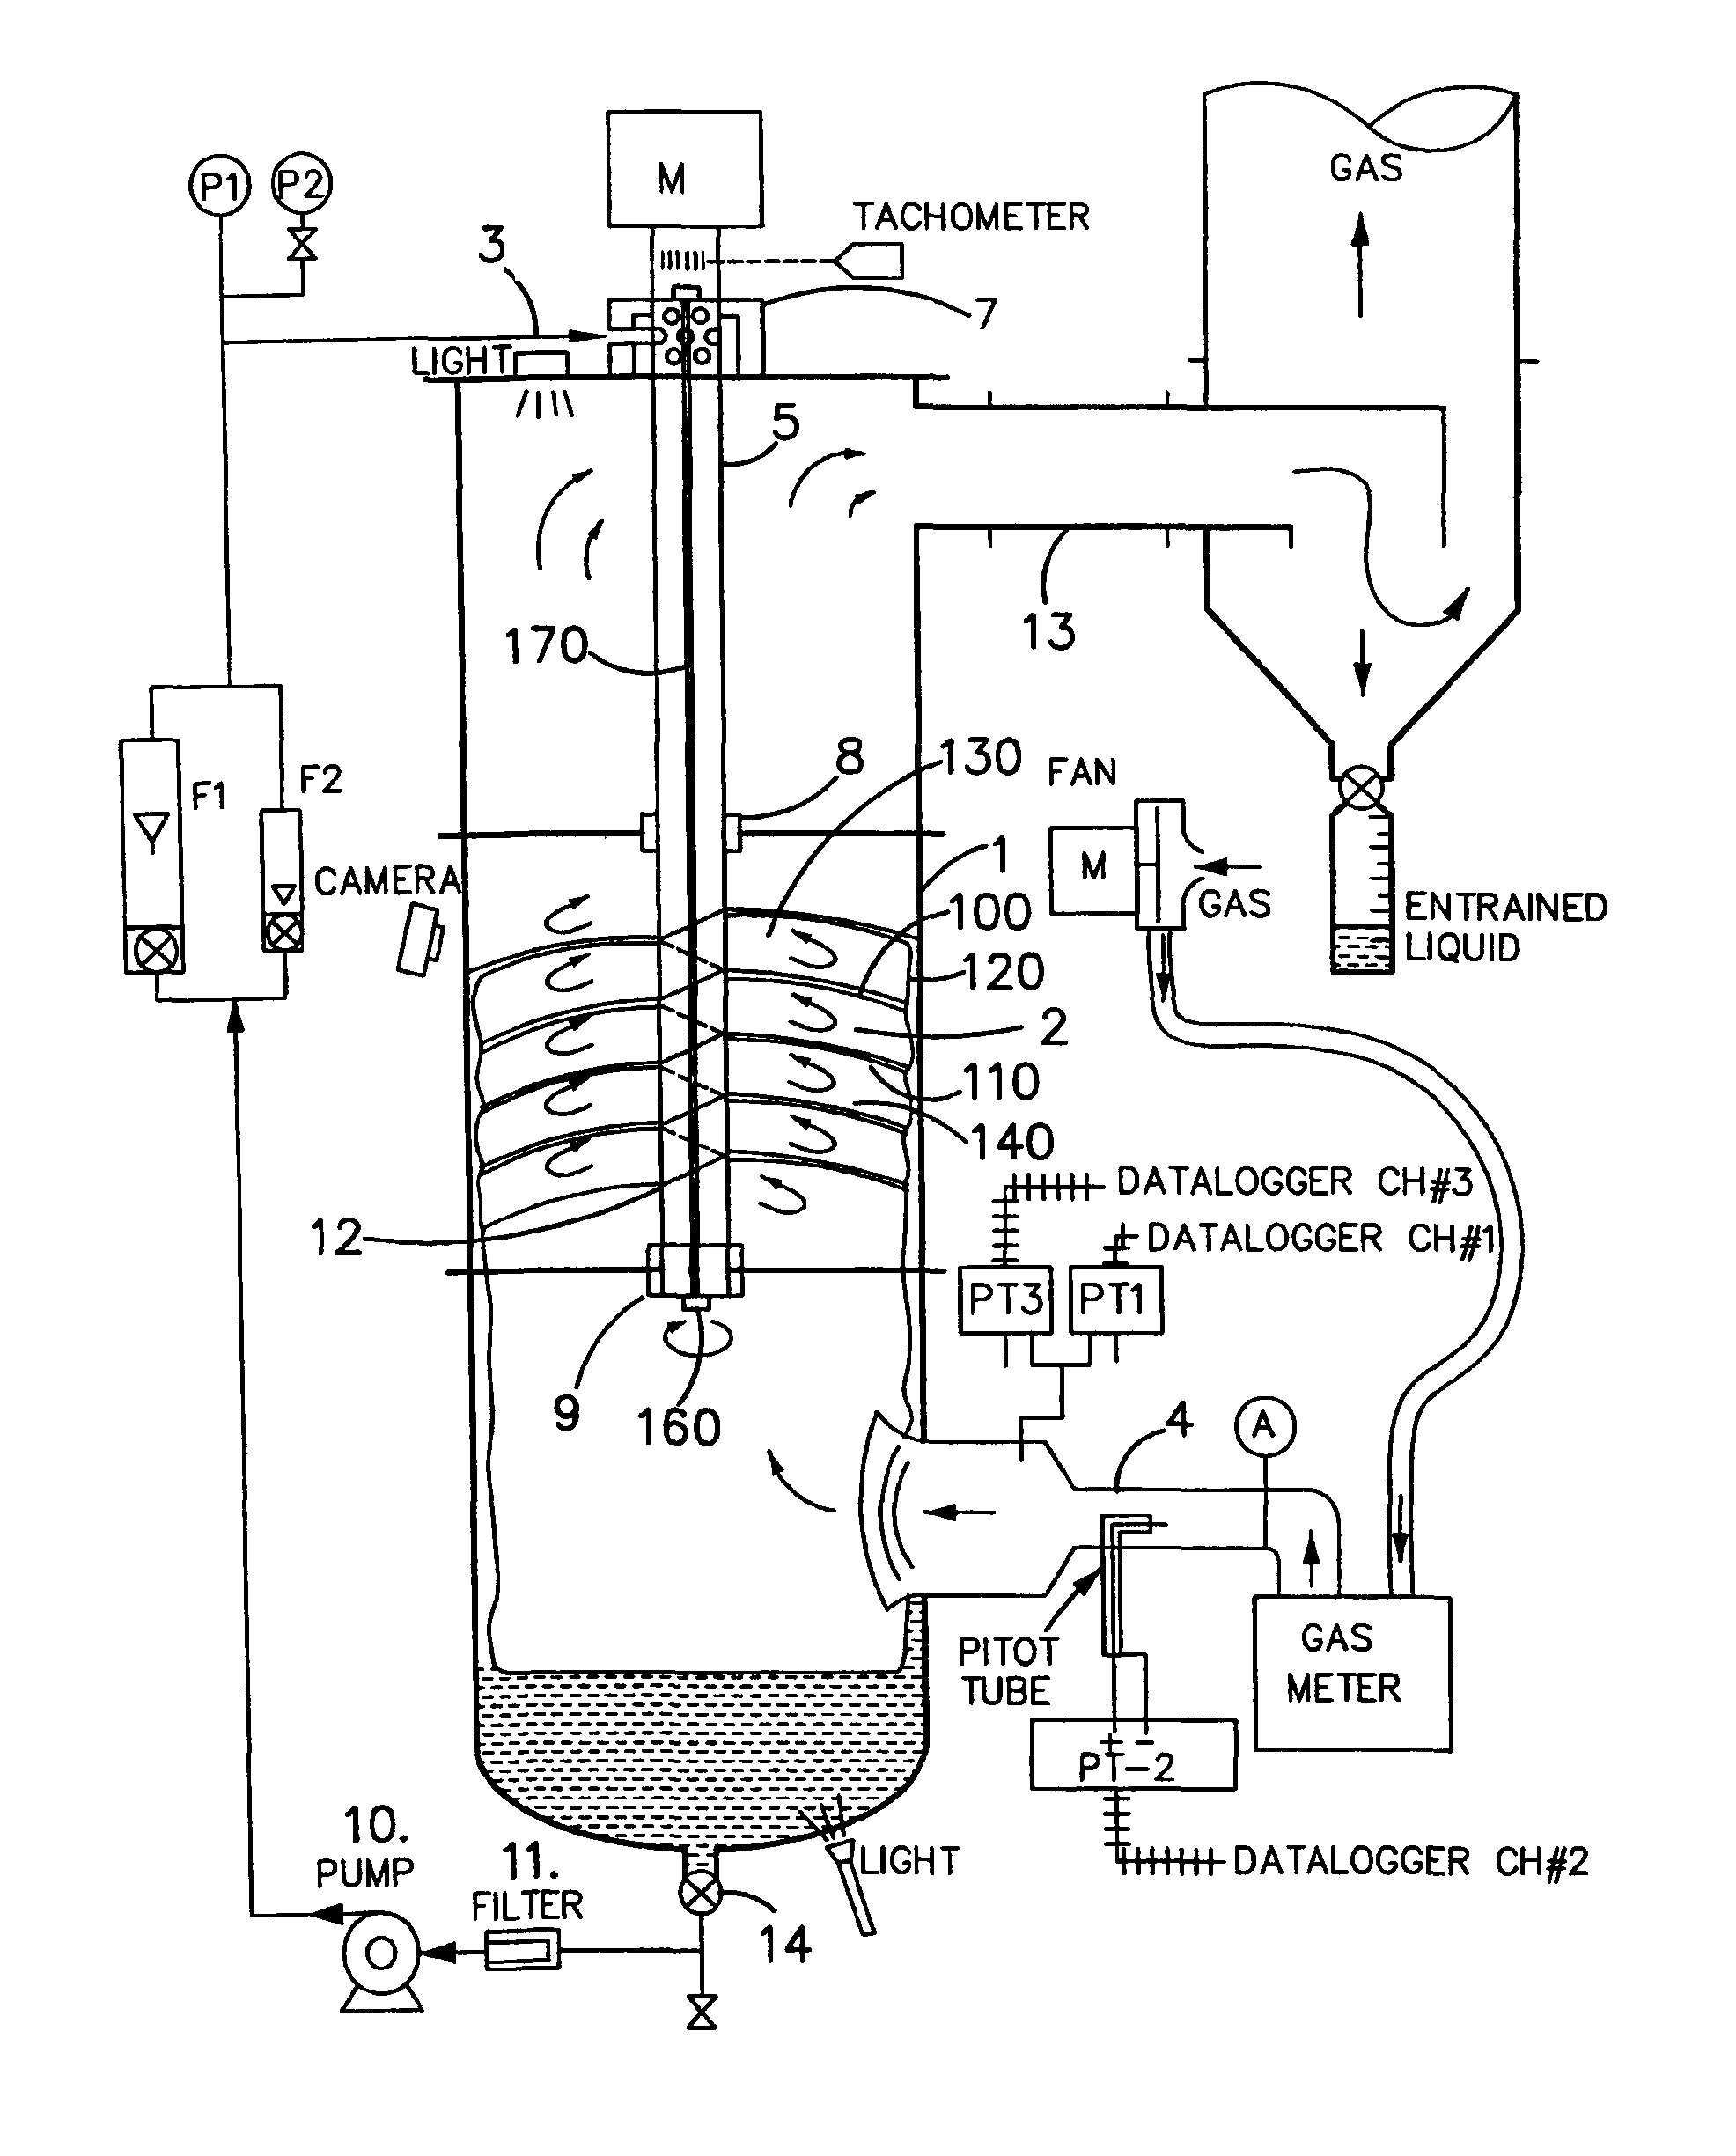 Gas liquid contactor